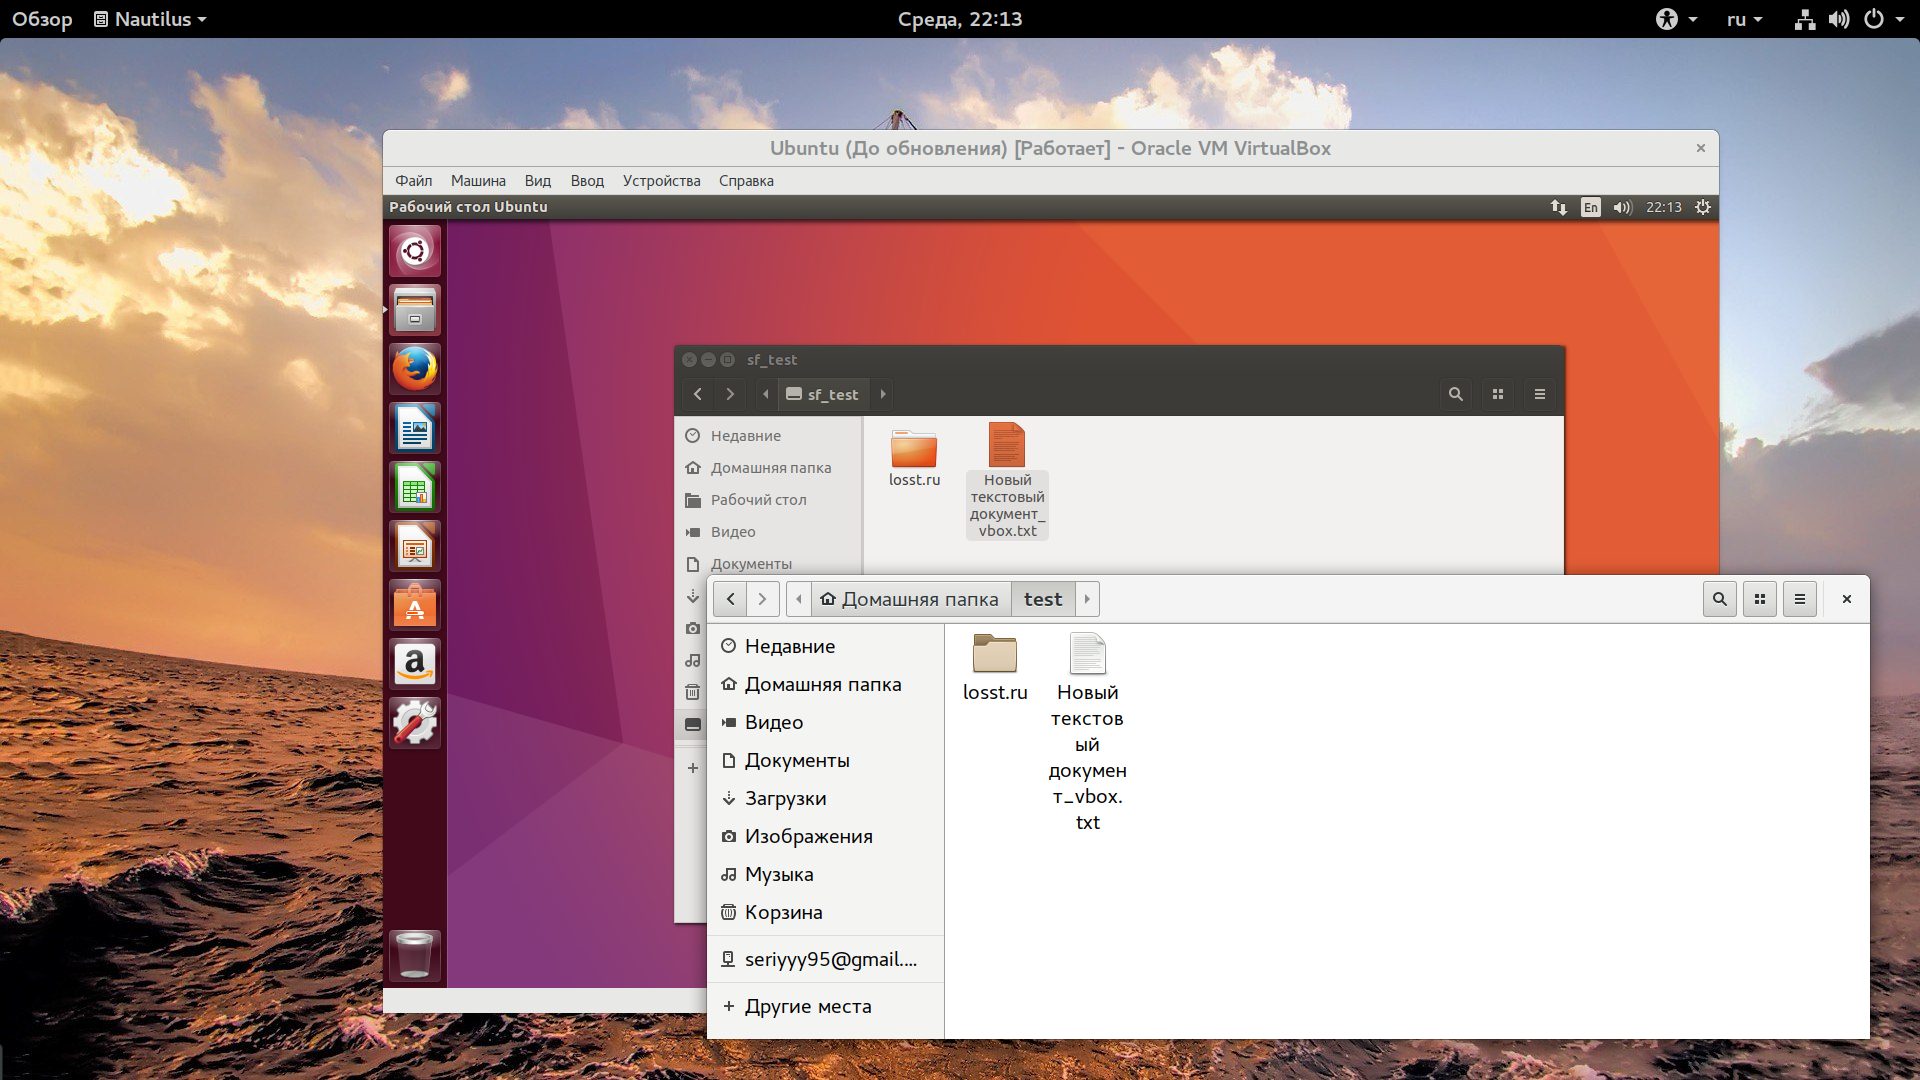 Как установить virtualbox в ubuntu 20.04